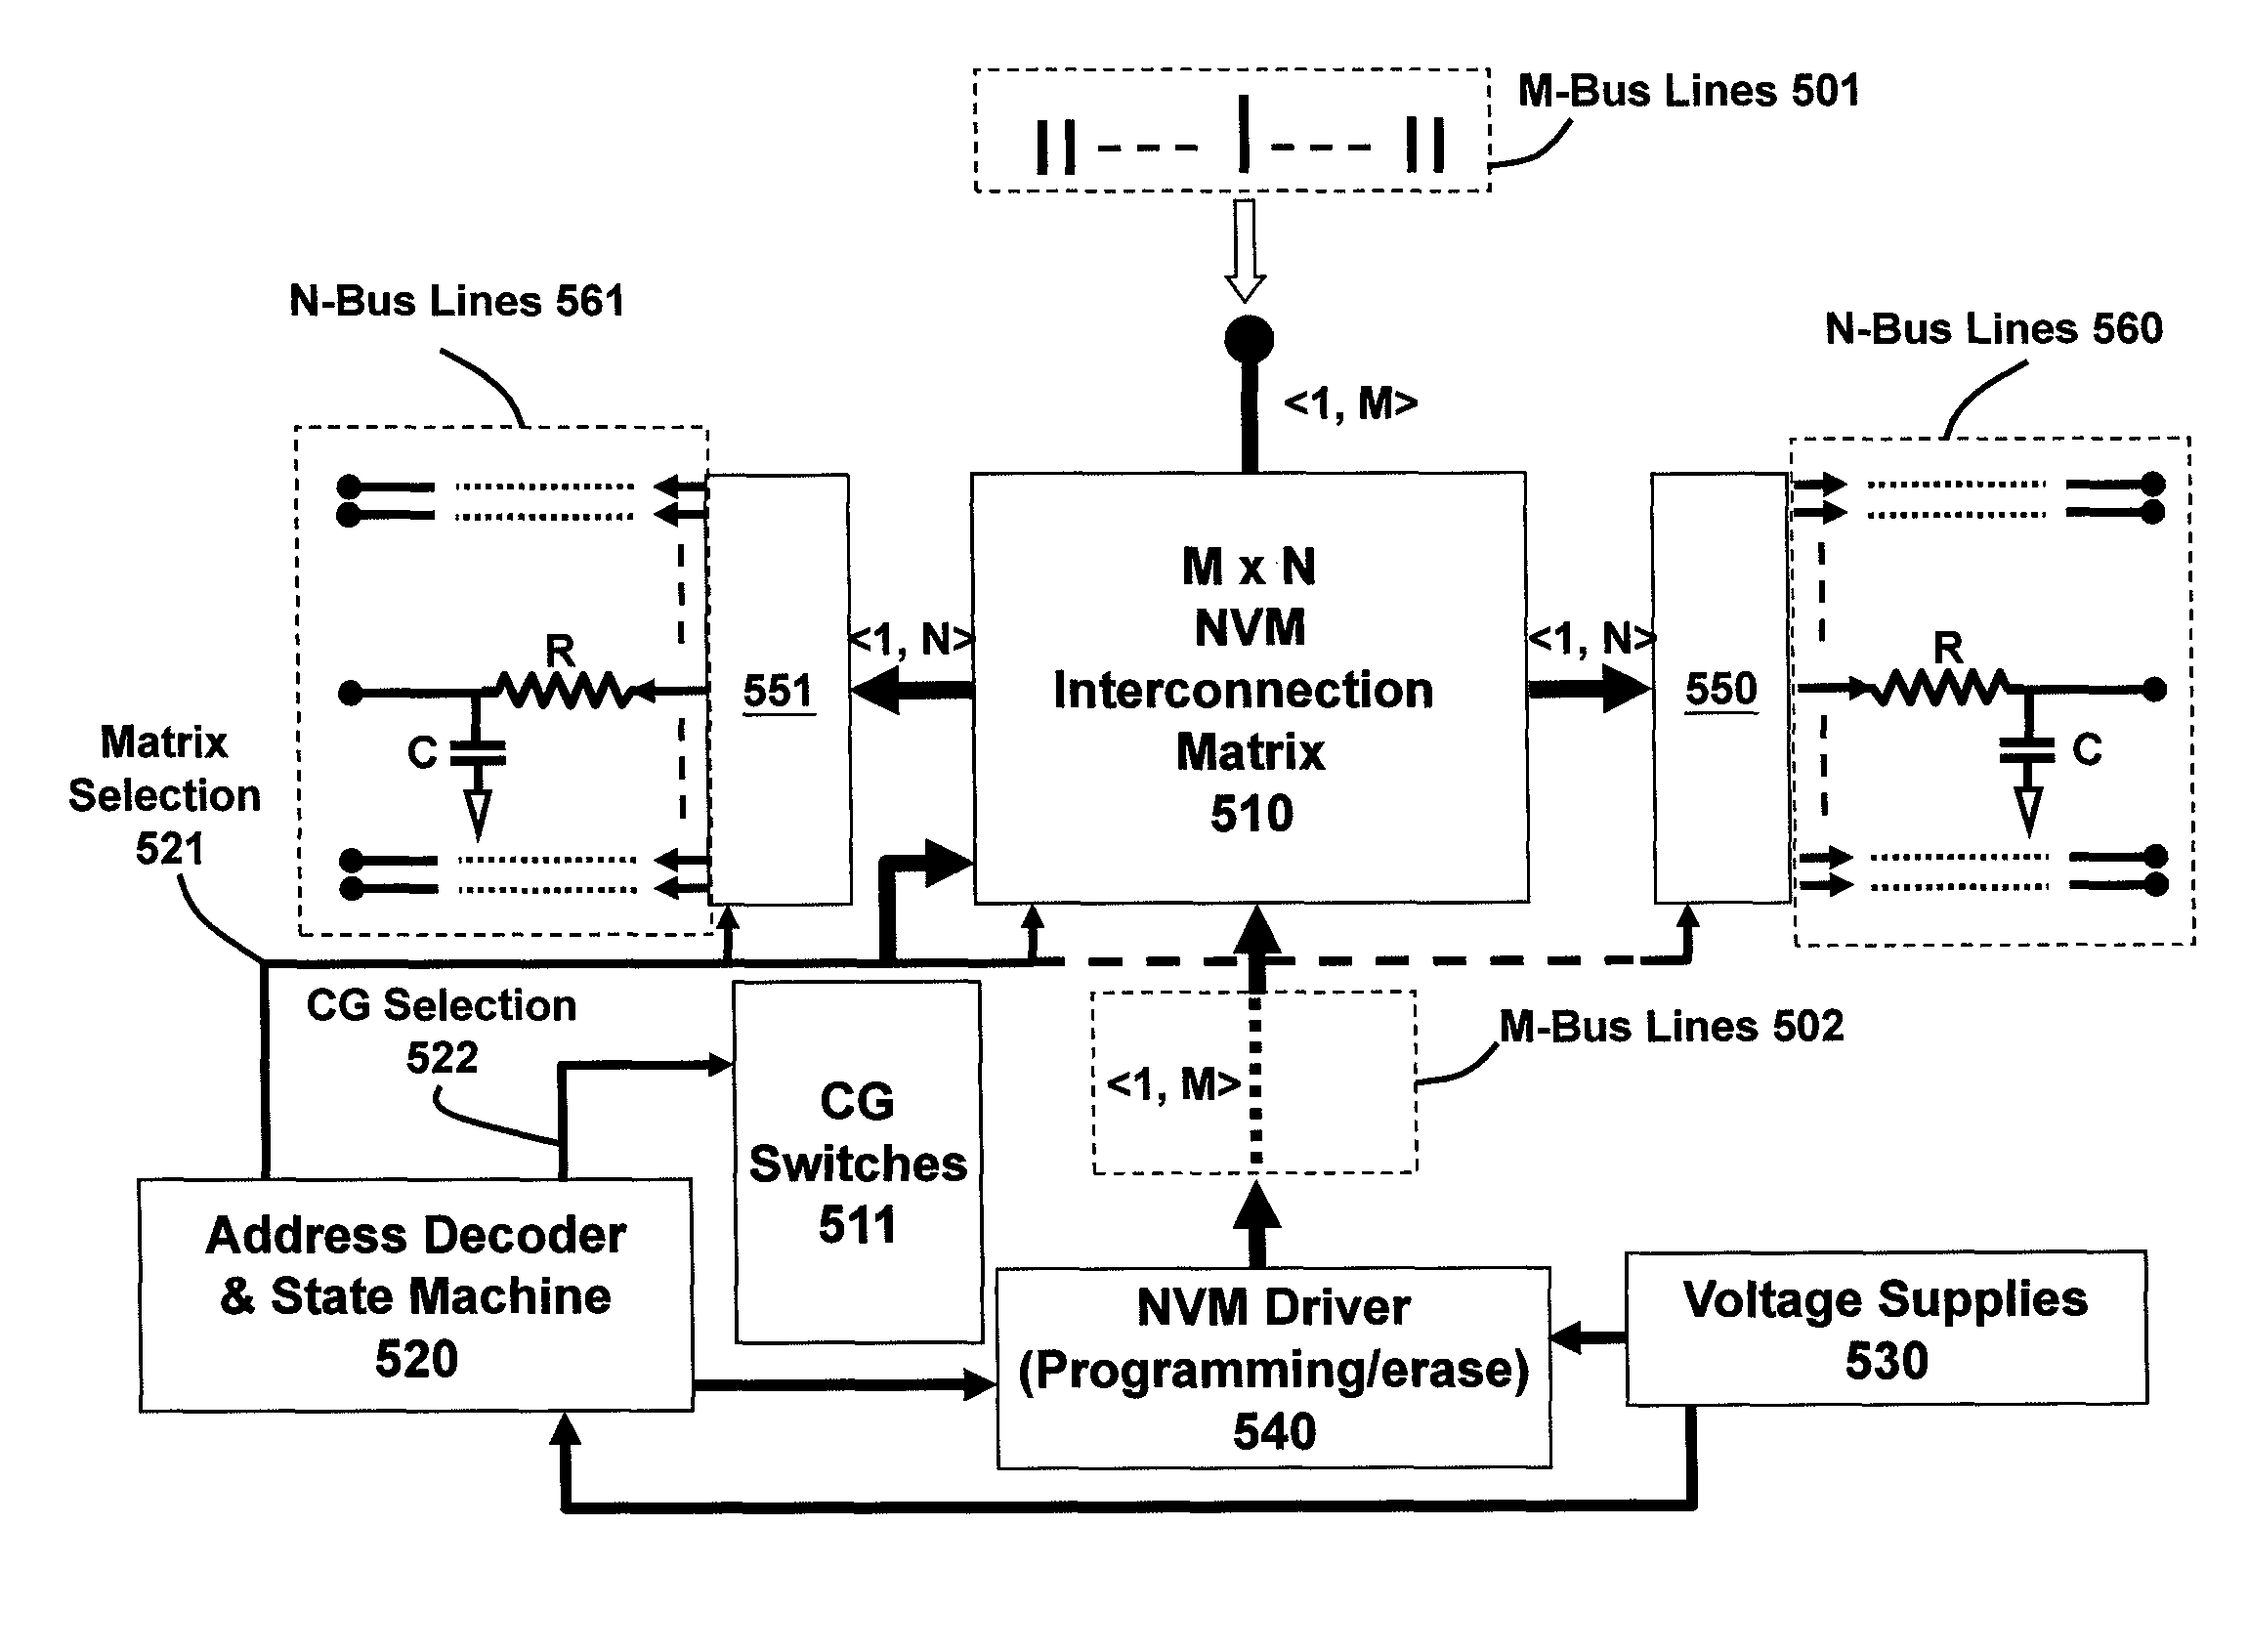 Interconnection matrix using semiconductor non-volatile memory